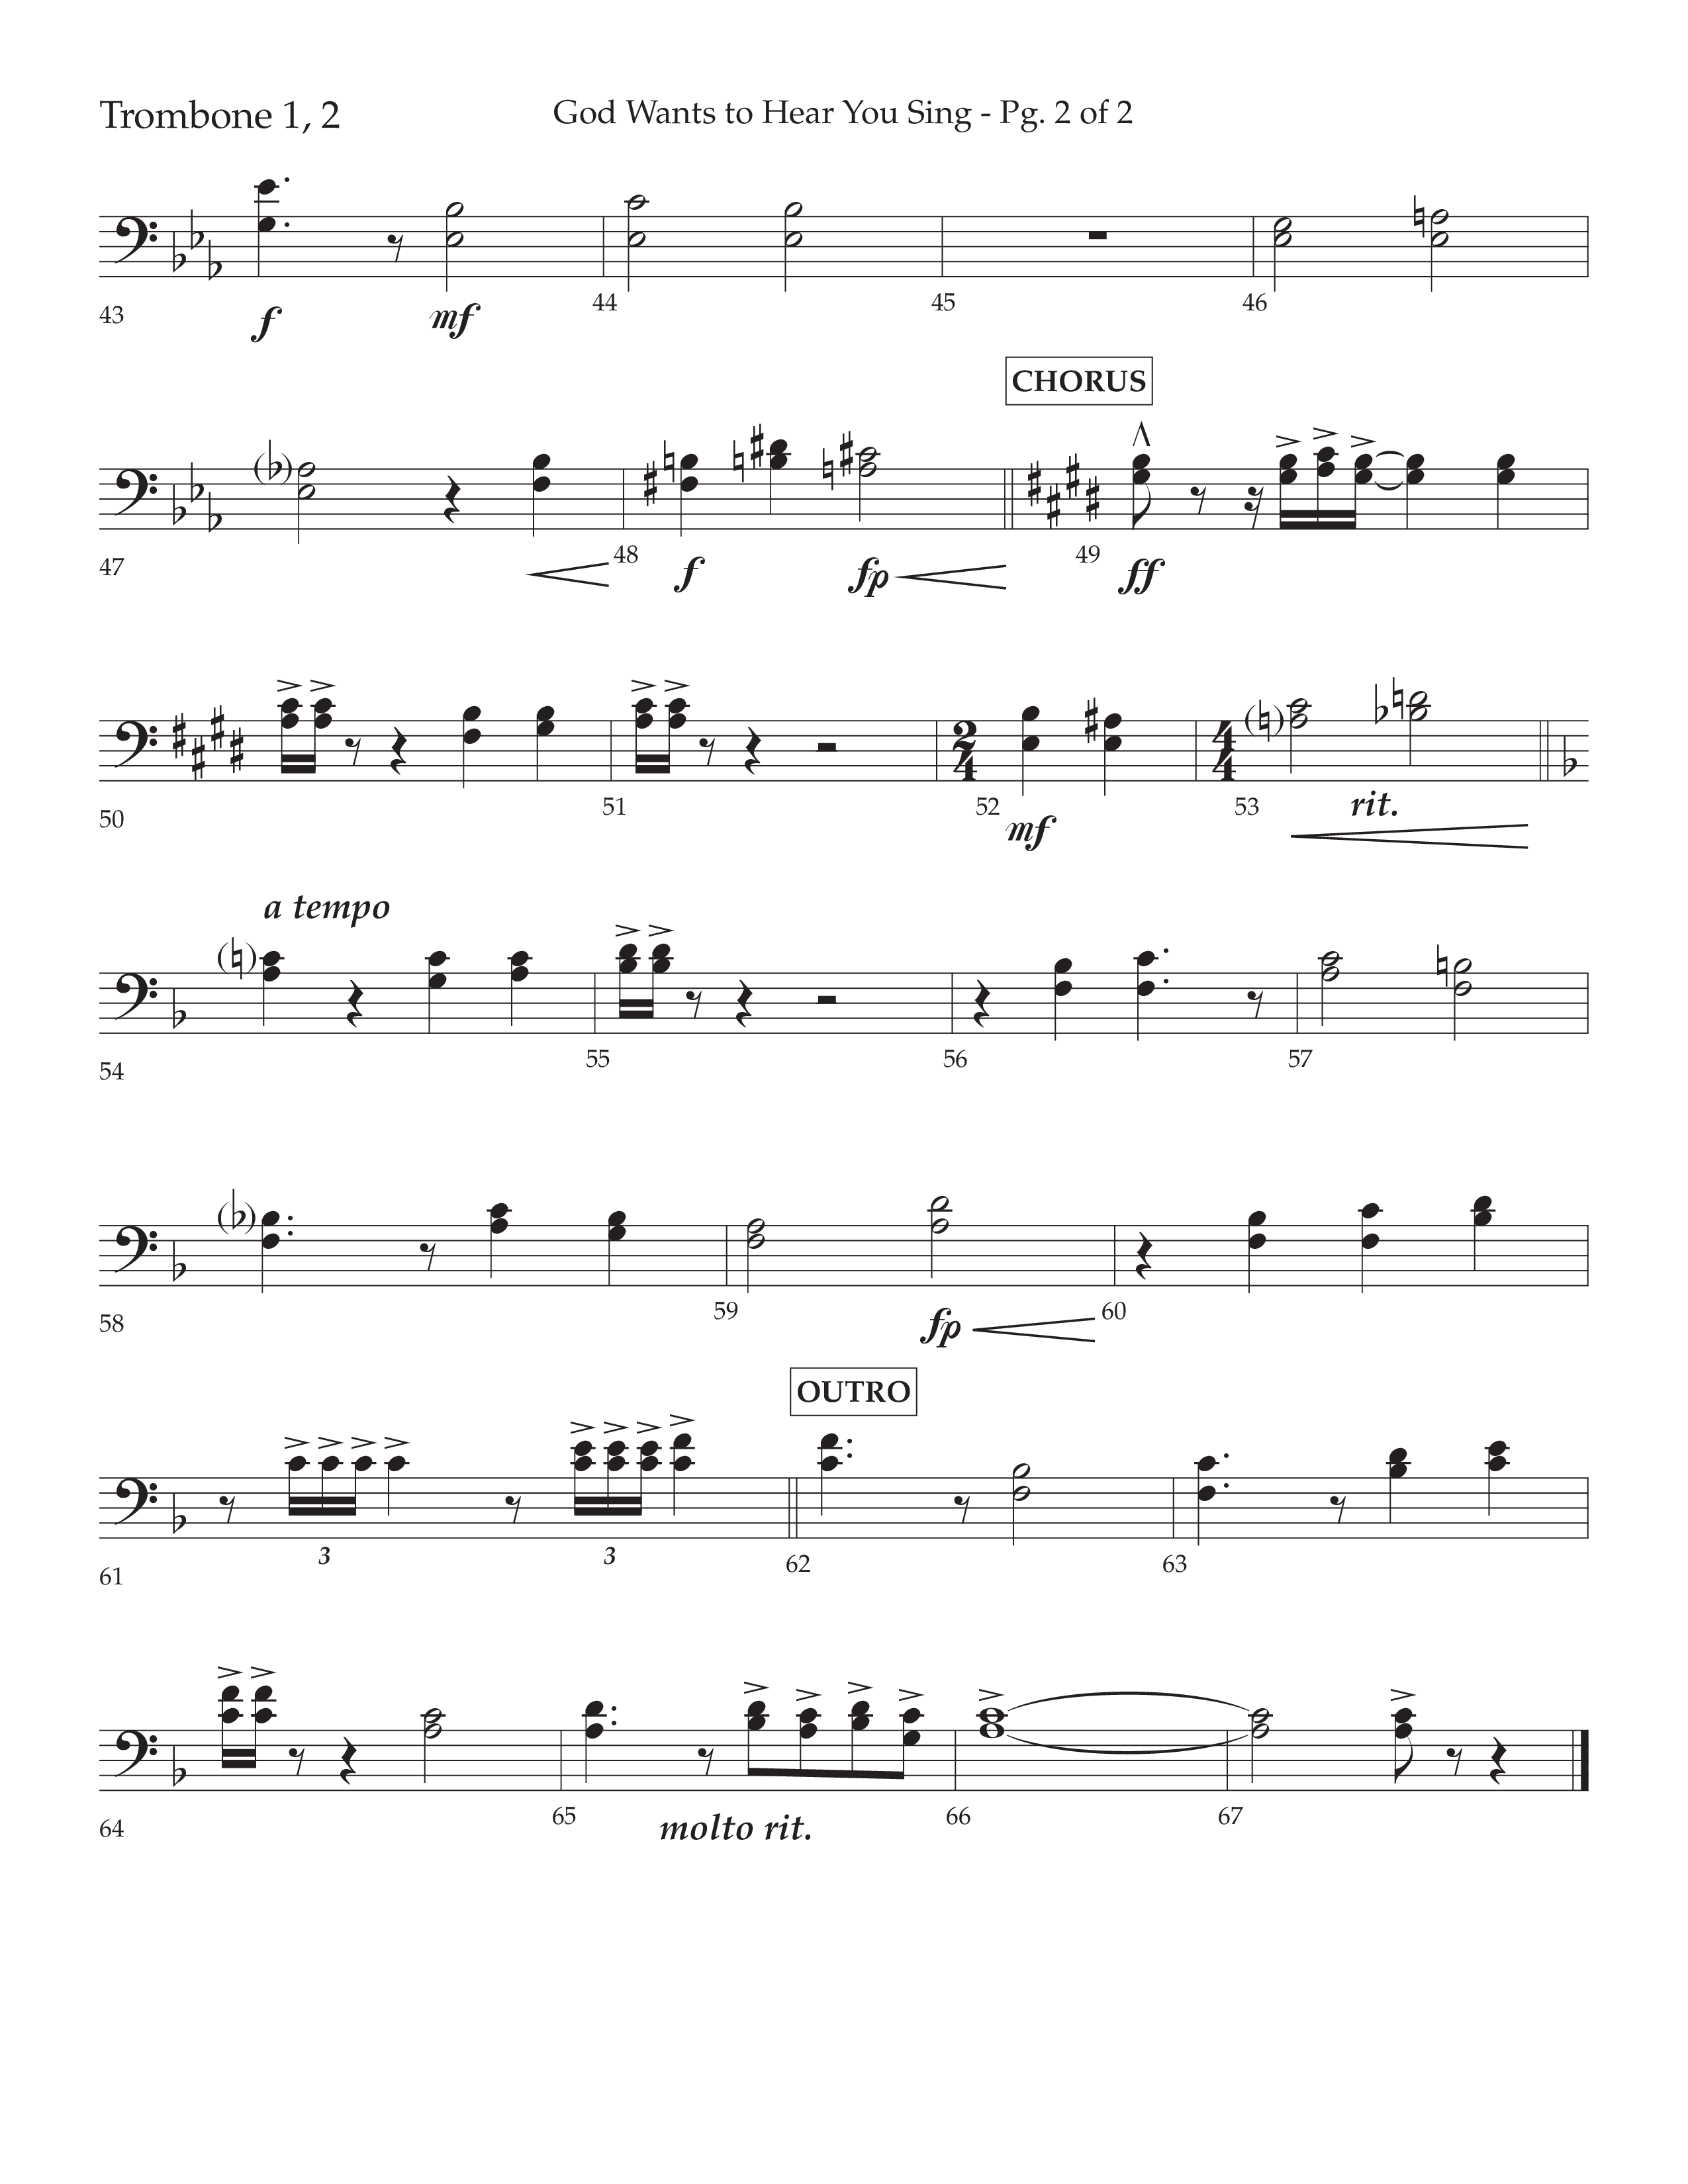 God Wants To Hear You Sing (Choral Anthem SATB) Trombone 1/2 (Lifeway Choral / Arr. Bradley Knight)